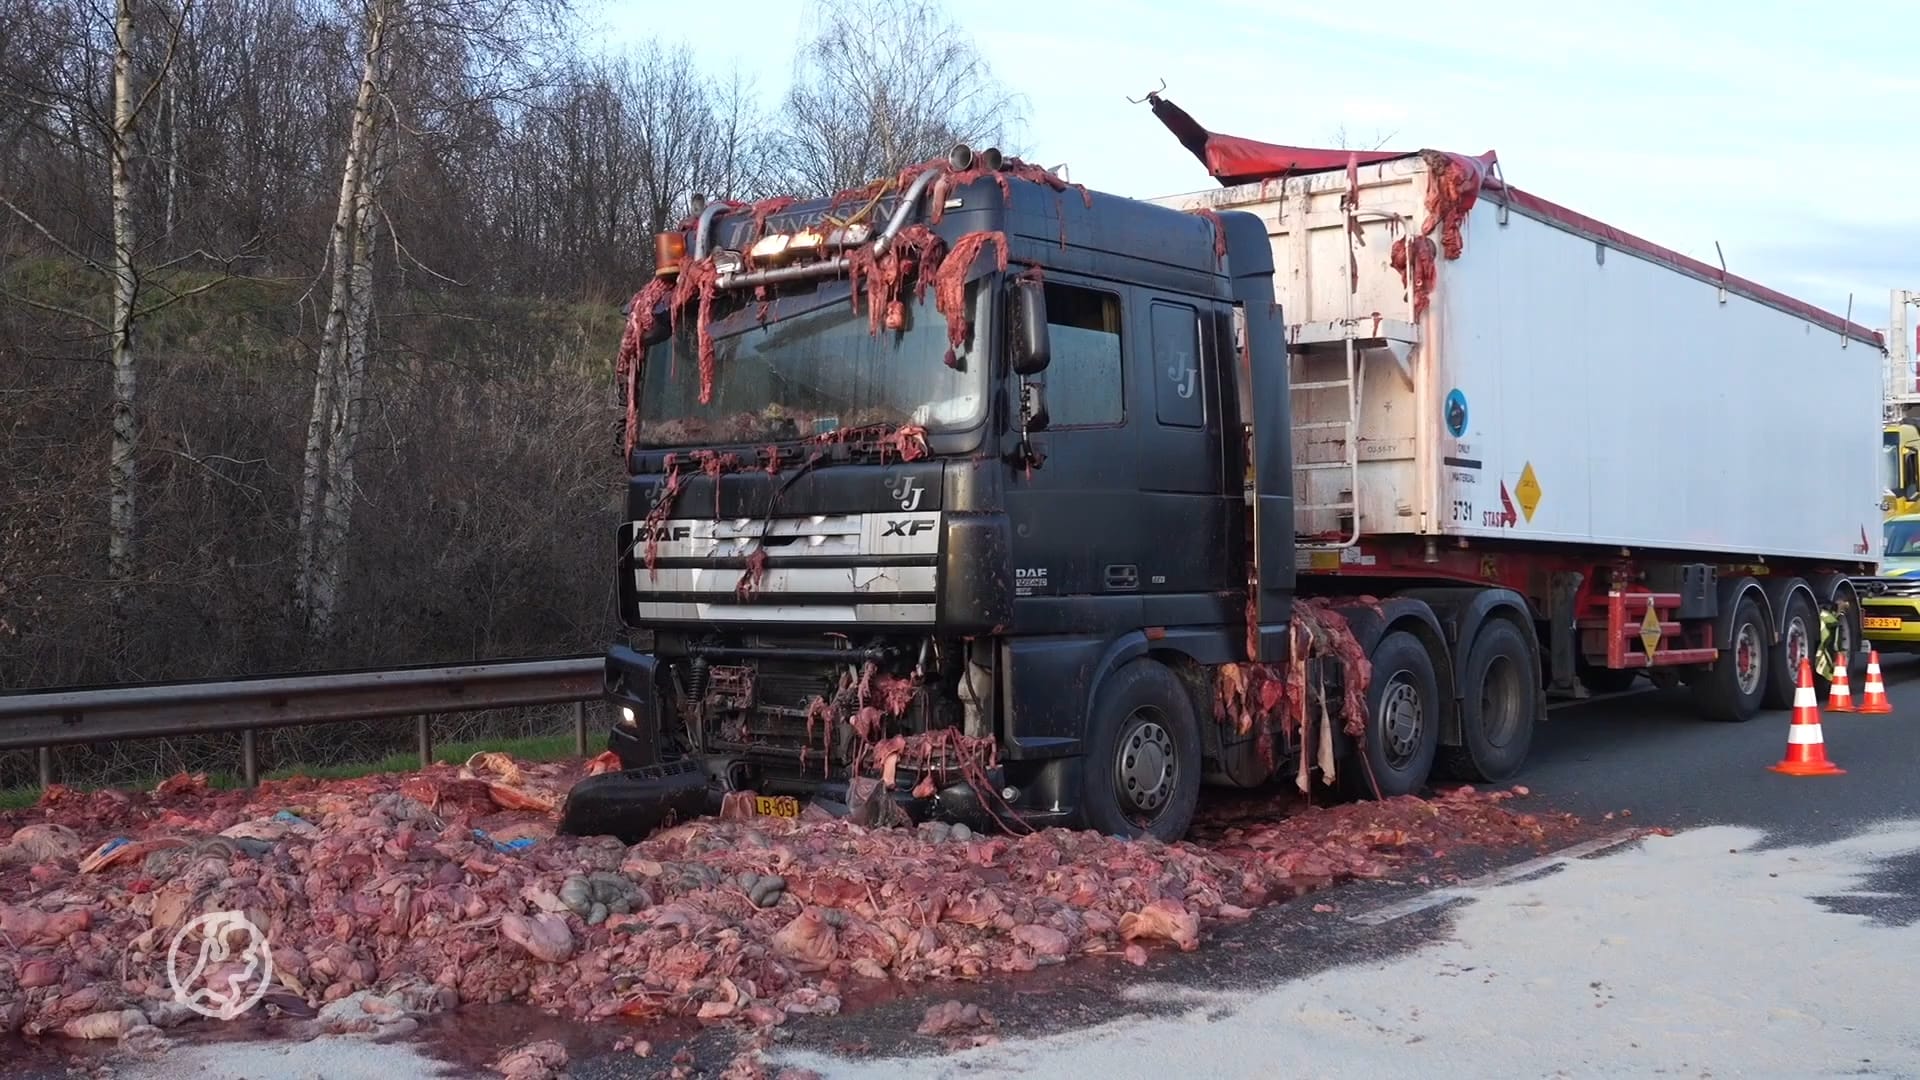 A67 bezaaid met ingewanden: vrachtwagen verliest 10.000 kilo slachtafval